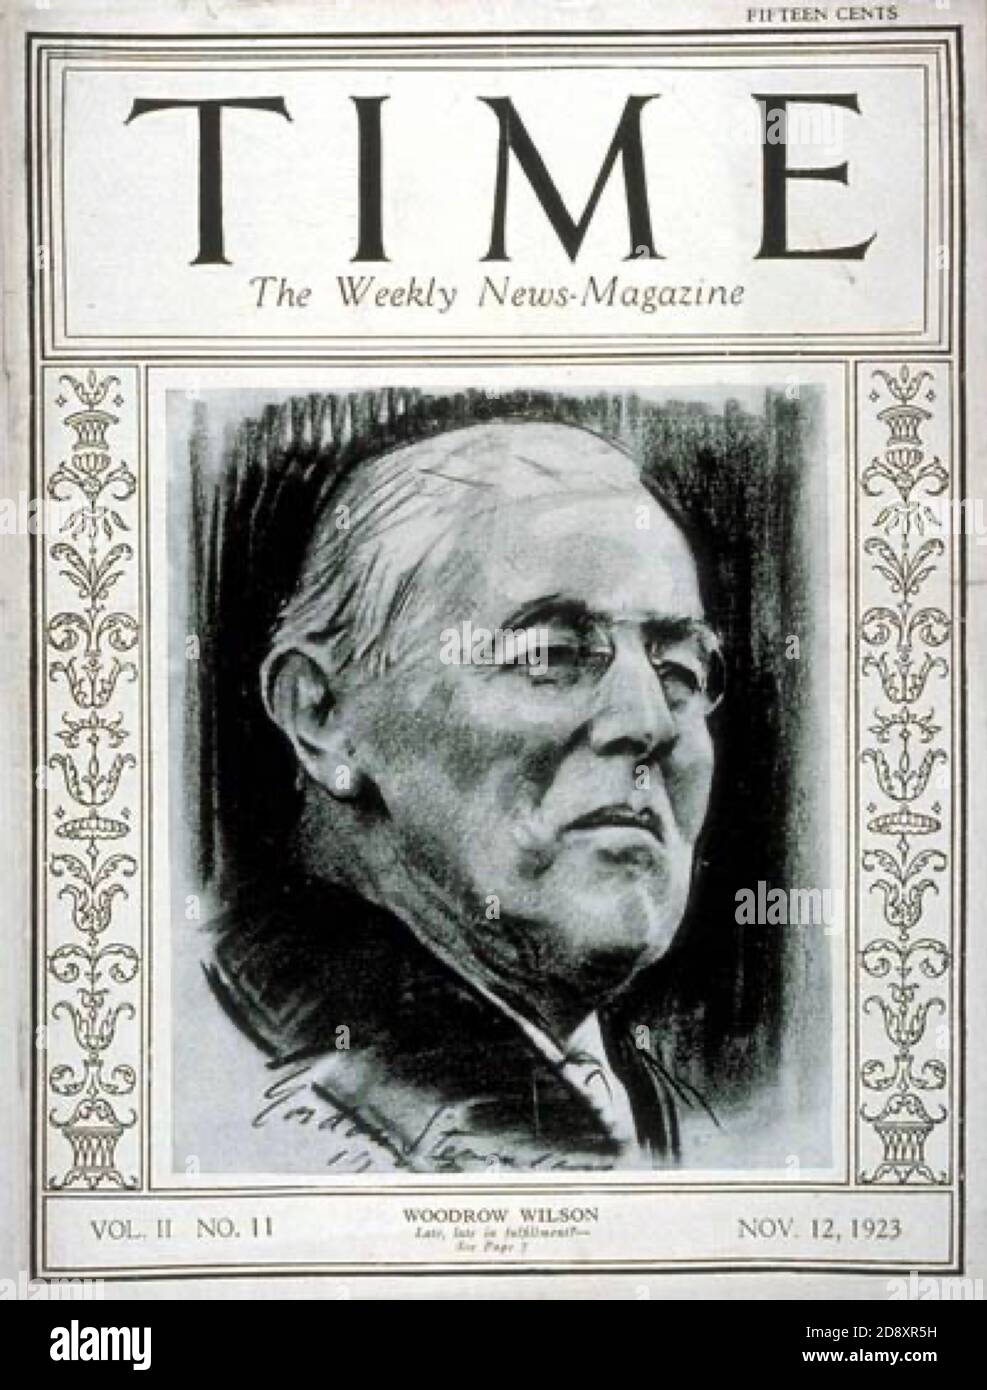 Time Magazine front cover - Woodrow Wilson - Cover Design Gordon Stevenson. Stock Photo